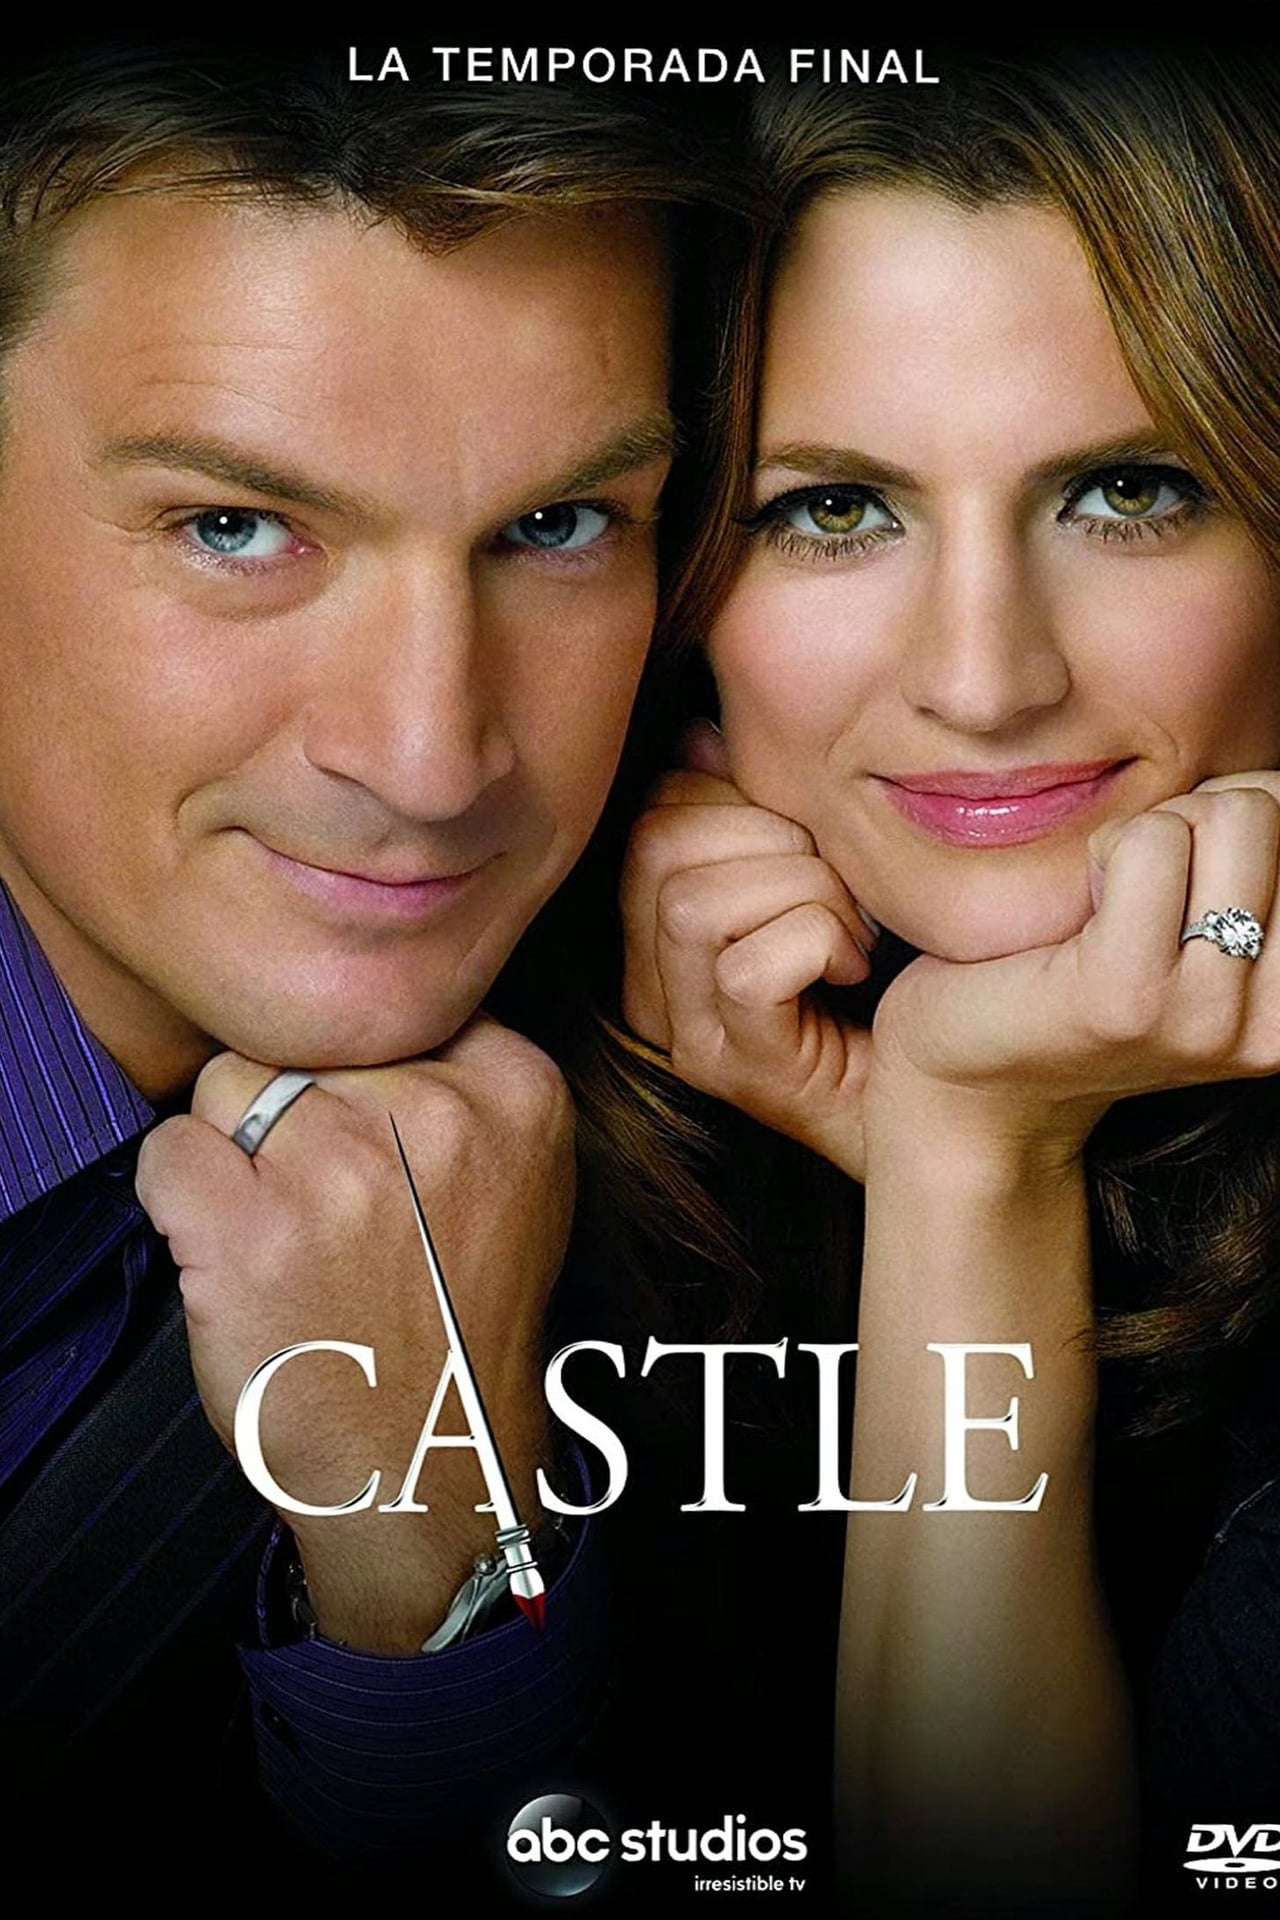 castle season 6 finale 2014